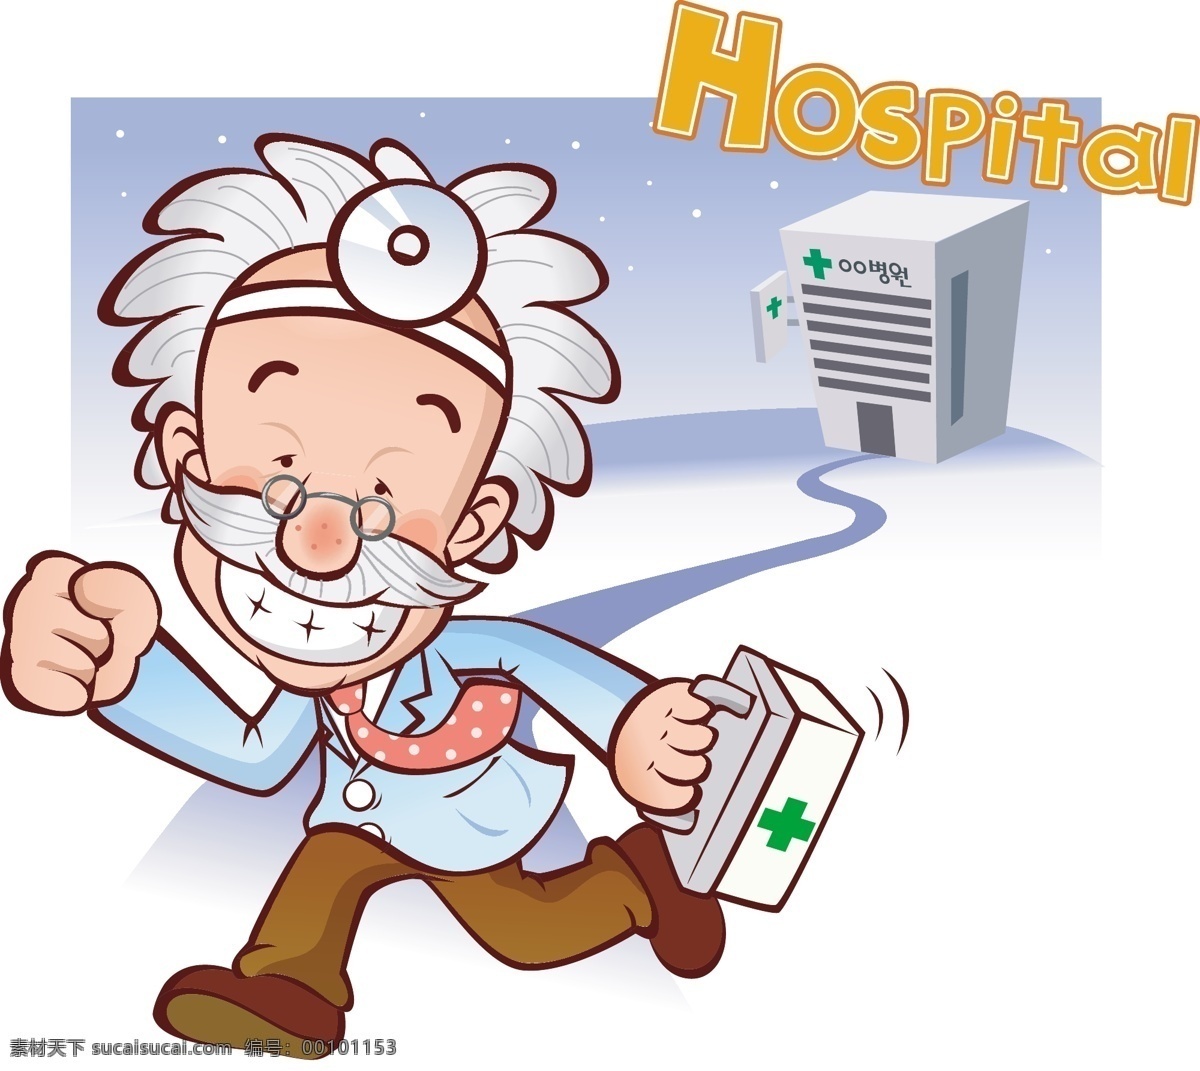 医生 医院 卡通动画 动漫 插画 动漫动画 动漫人物 和谐 卡通 十字标志 医护人员 友善 救死扶伤 可爱